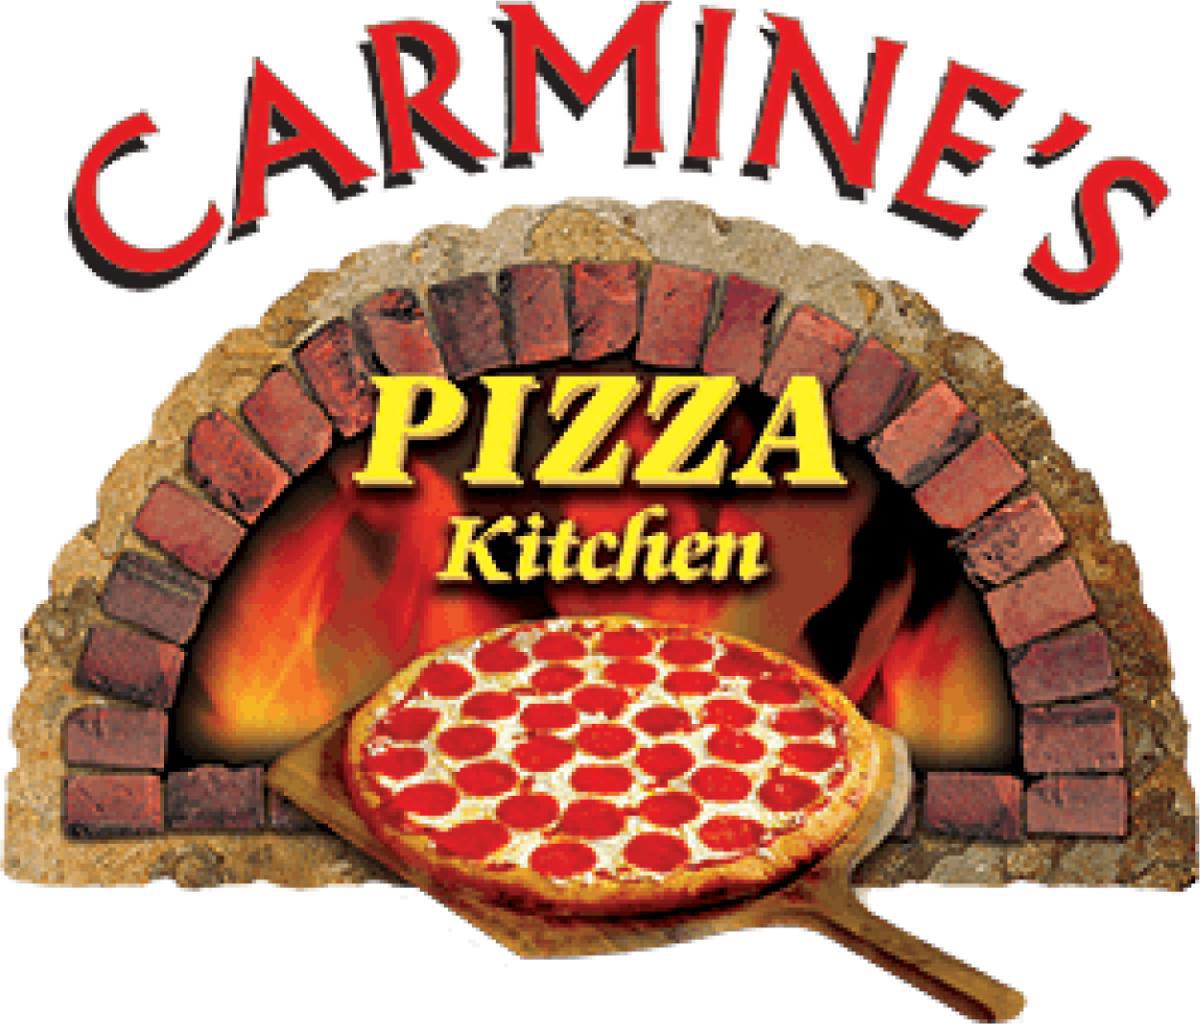 Carmine's Pizza Kitchen @ American Pacific Dr.